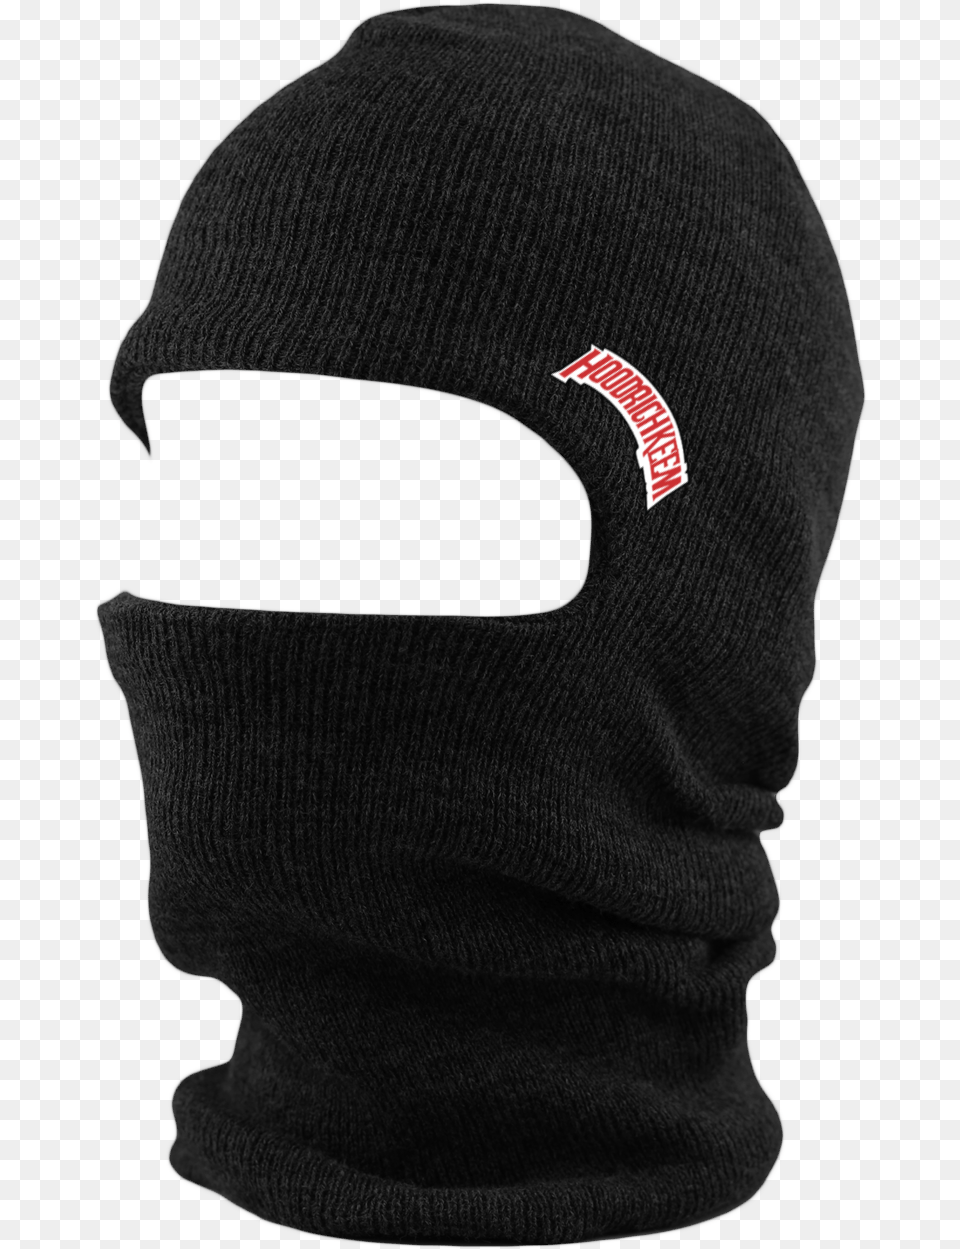 Black Ski Mask Ski Mask, Cap, Clothing, Hat, Baby Free Png Download